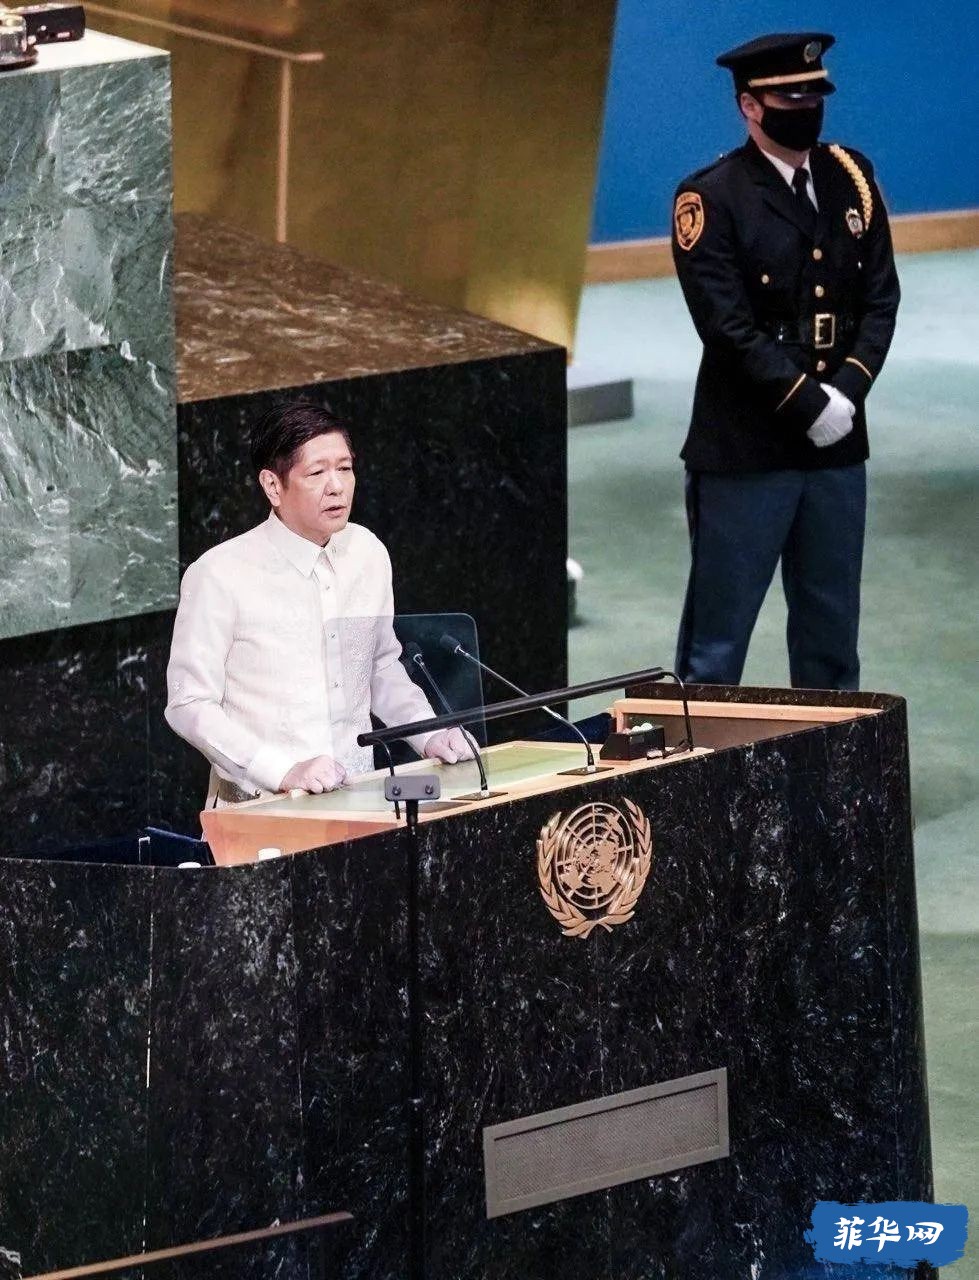 菲律宾总统小马科斯在联合国大会上的演讲w5.jpg